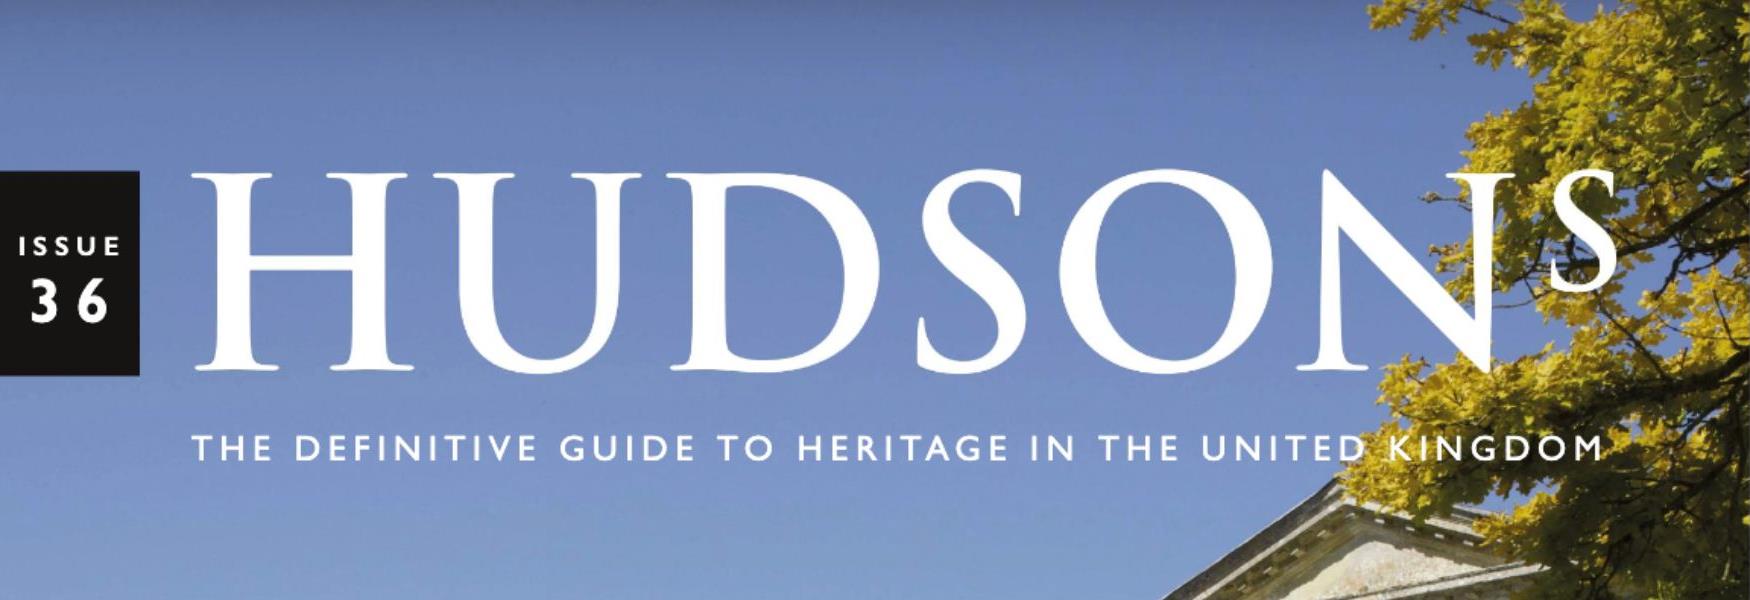 Hudsons guide